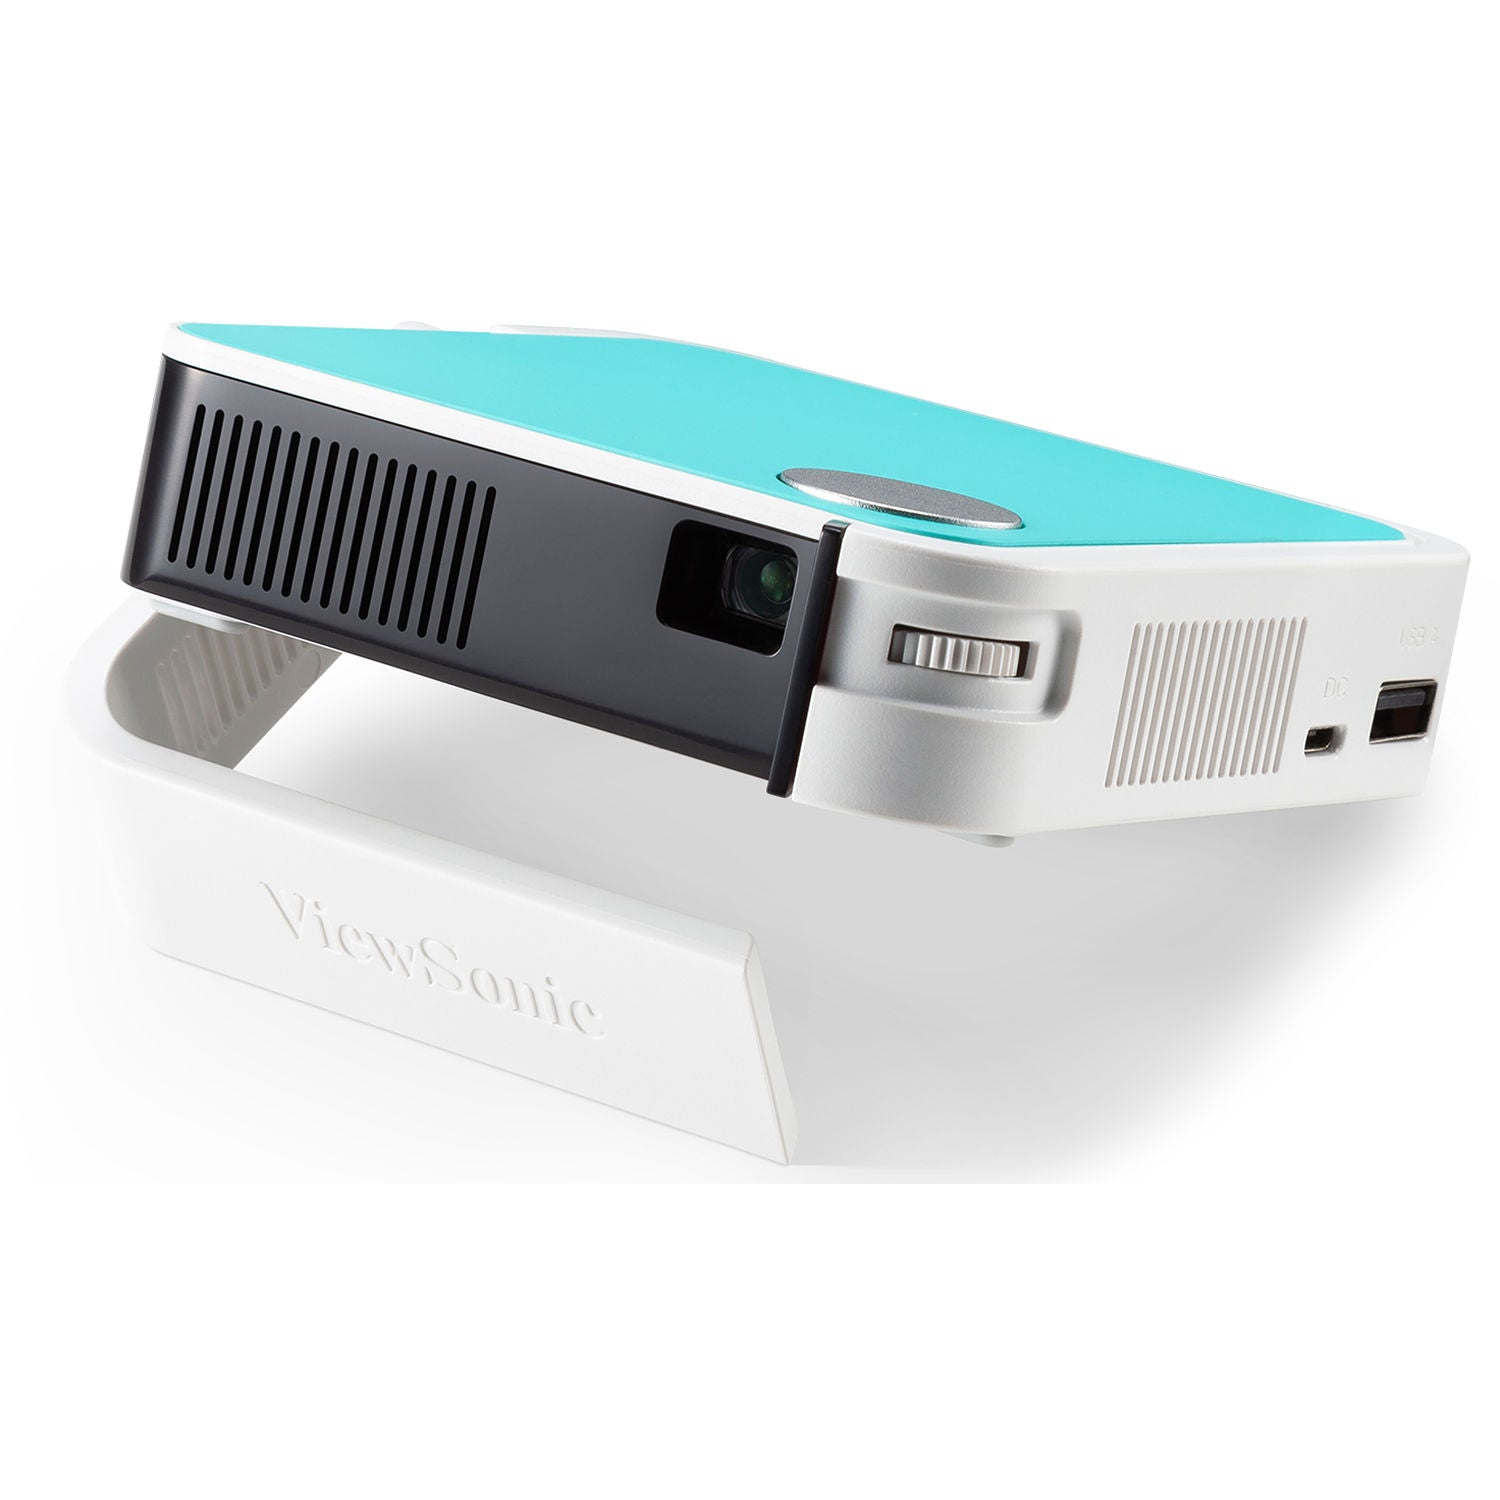 ViewSonic M1MINI-2-R M1 Mini LED Pocket Projector with JBL Speaker - Certified Refurbished